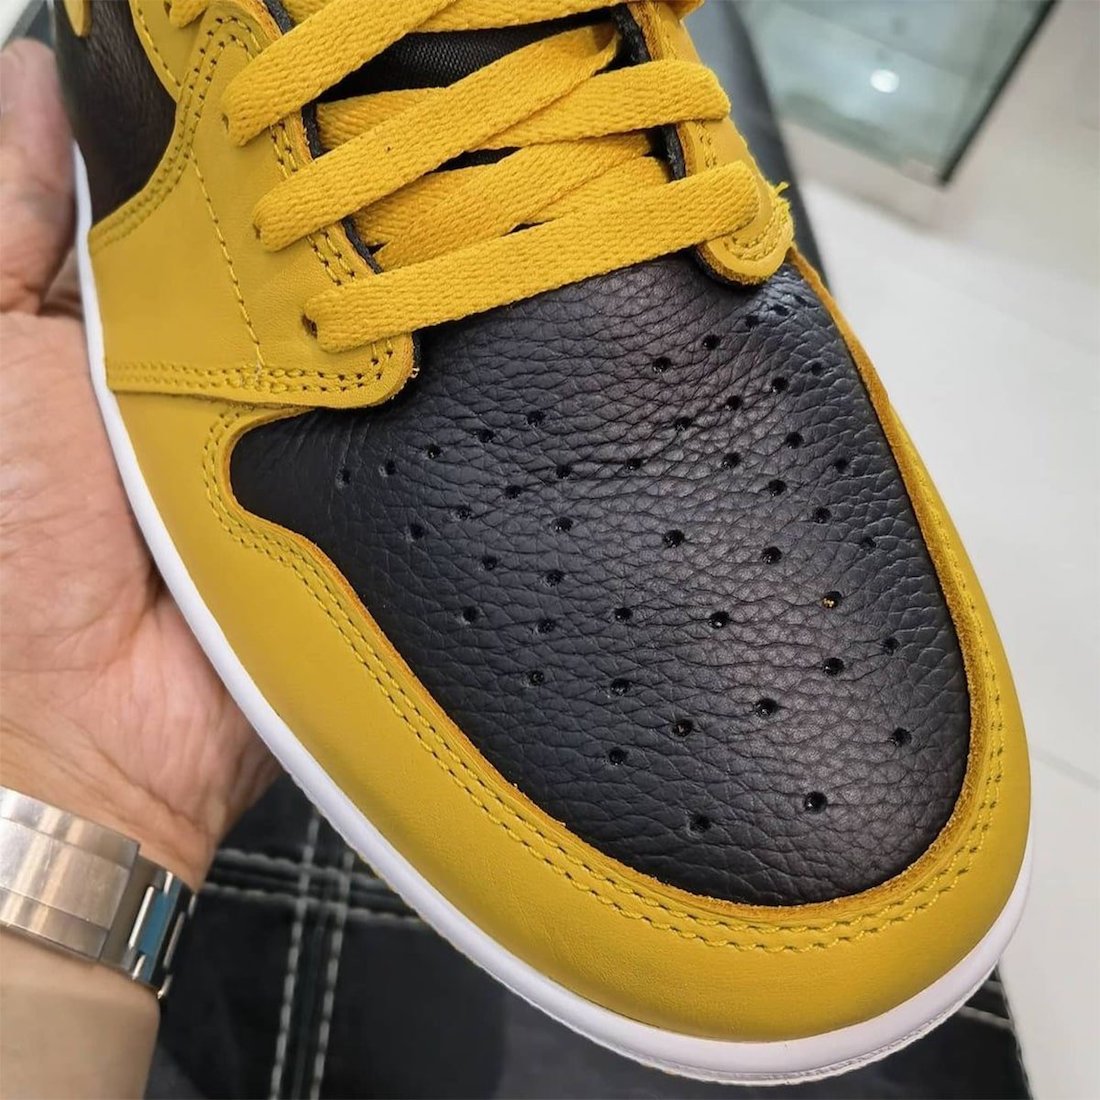 运动鞋, zsneakerheadz, Nike Air, Jordan Brand, Jordan, Black, Air Jordan 1 High OG“ Pollen”, Air Jordan 1